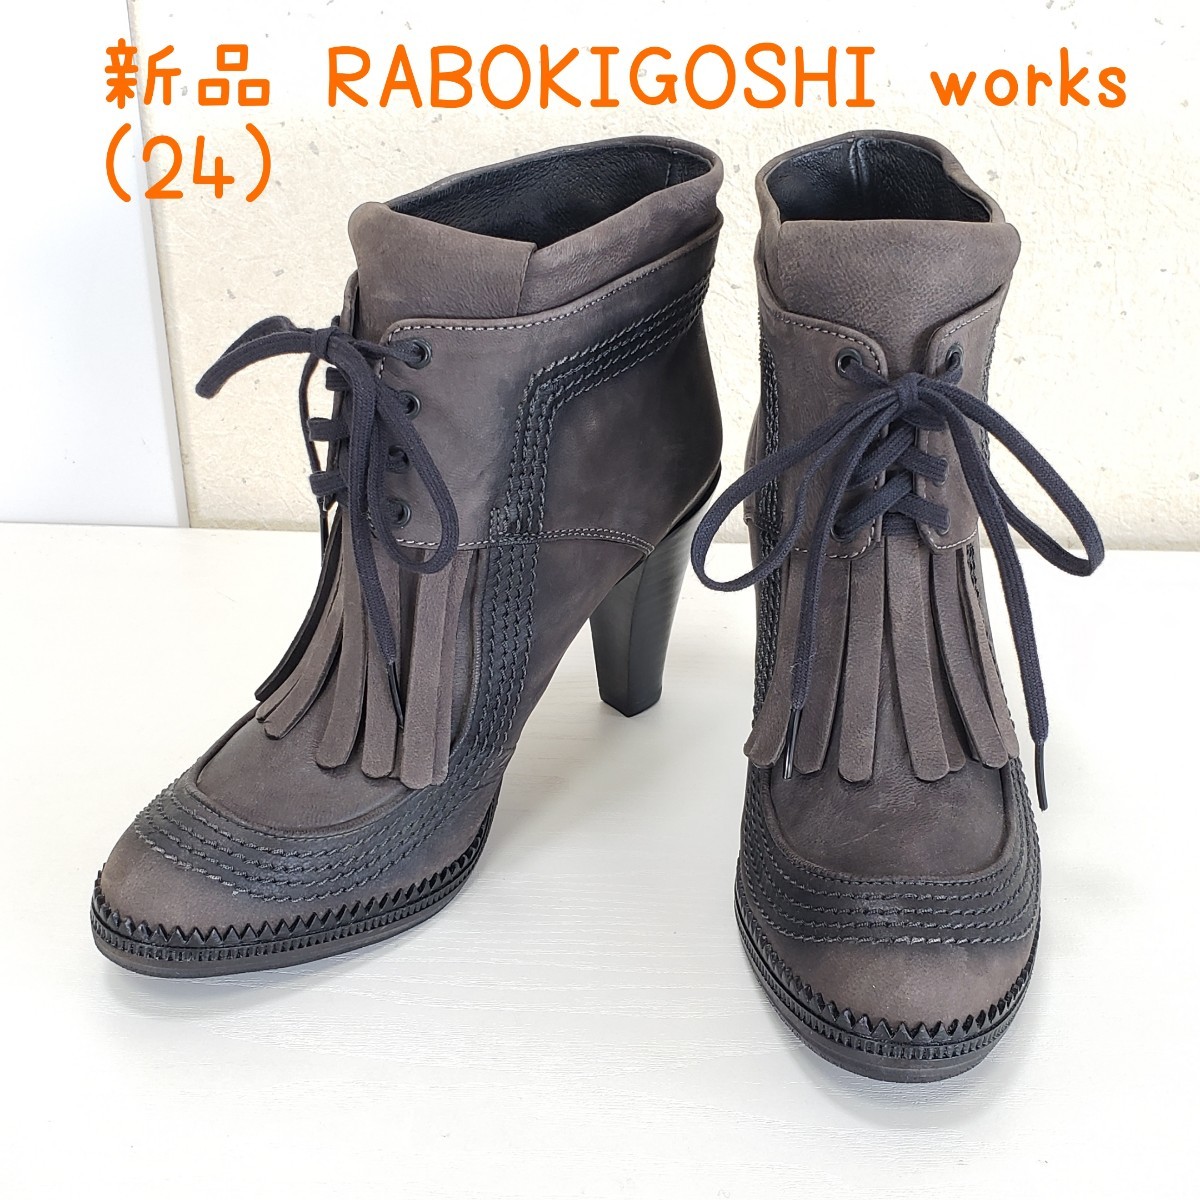 新品◆RABOKIGOSHI works ラボキゴシワークス 本革レザー ブーティ ショートブーツ(24cm)チャコールグレー